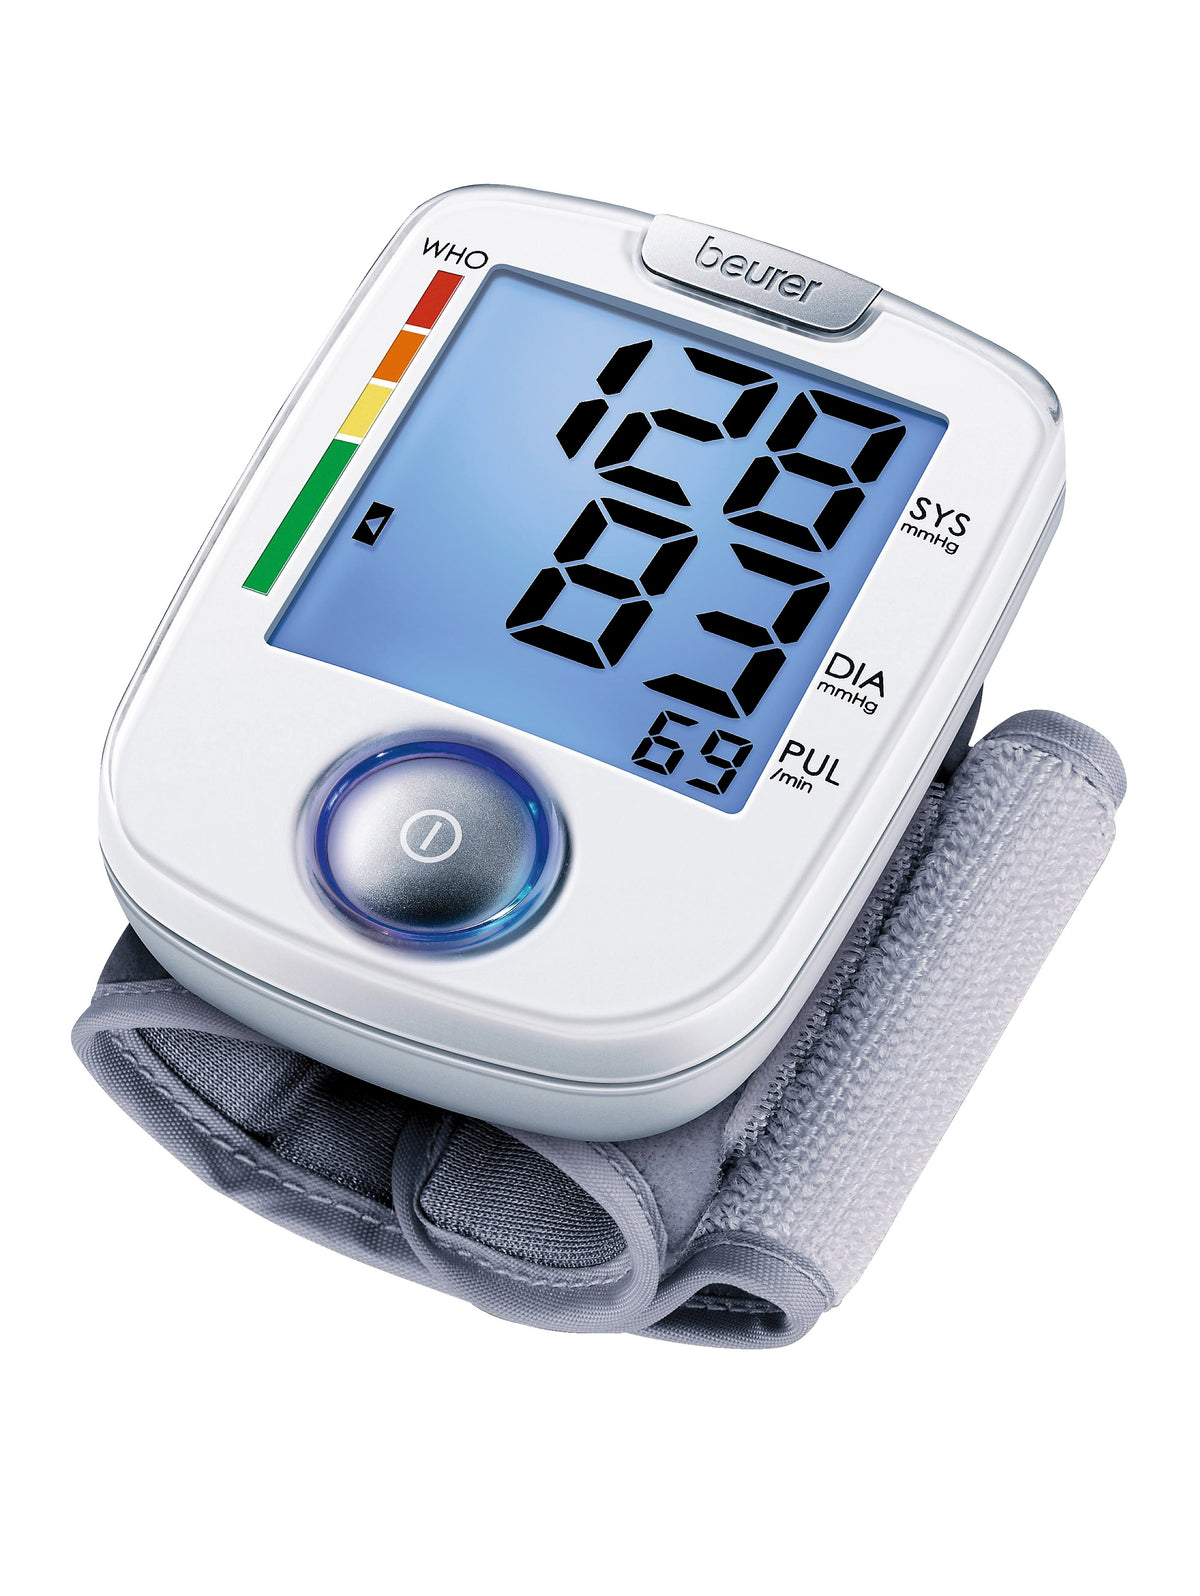 Handgelenk-Blutdruckmessgerät BC 44